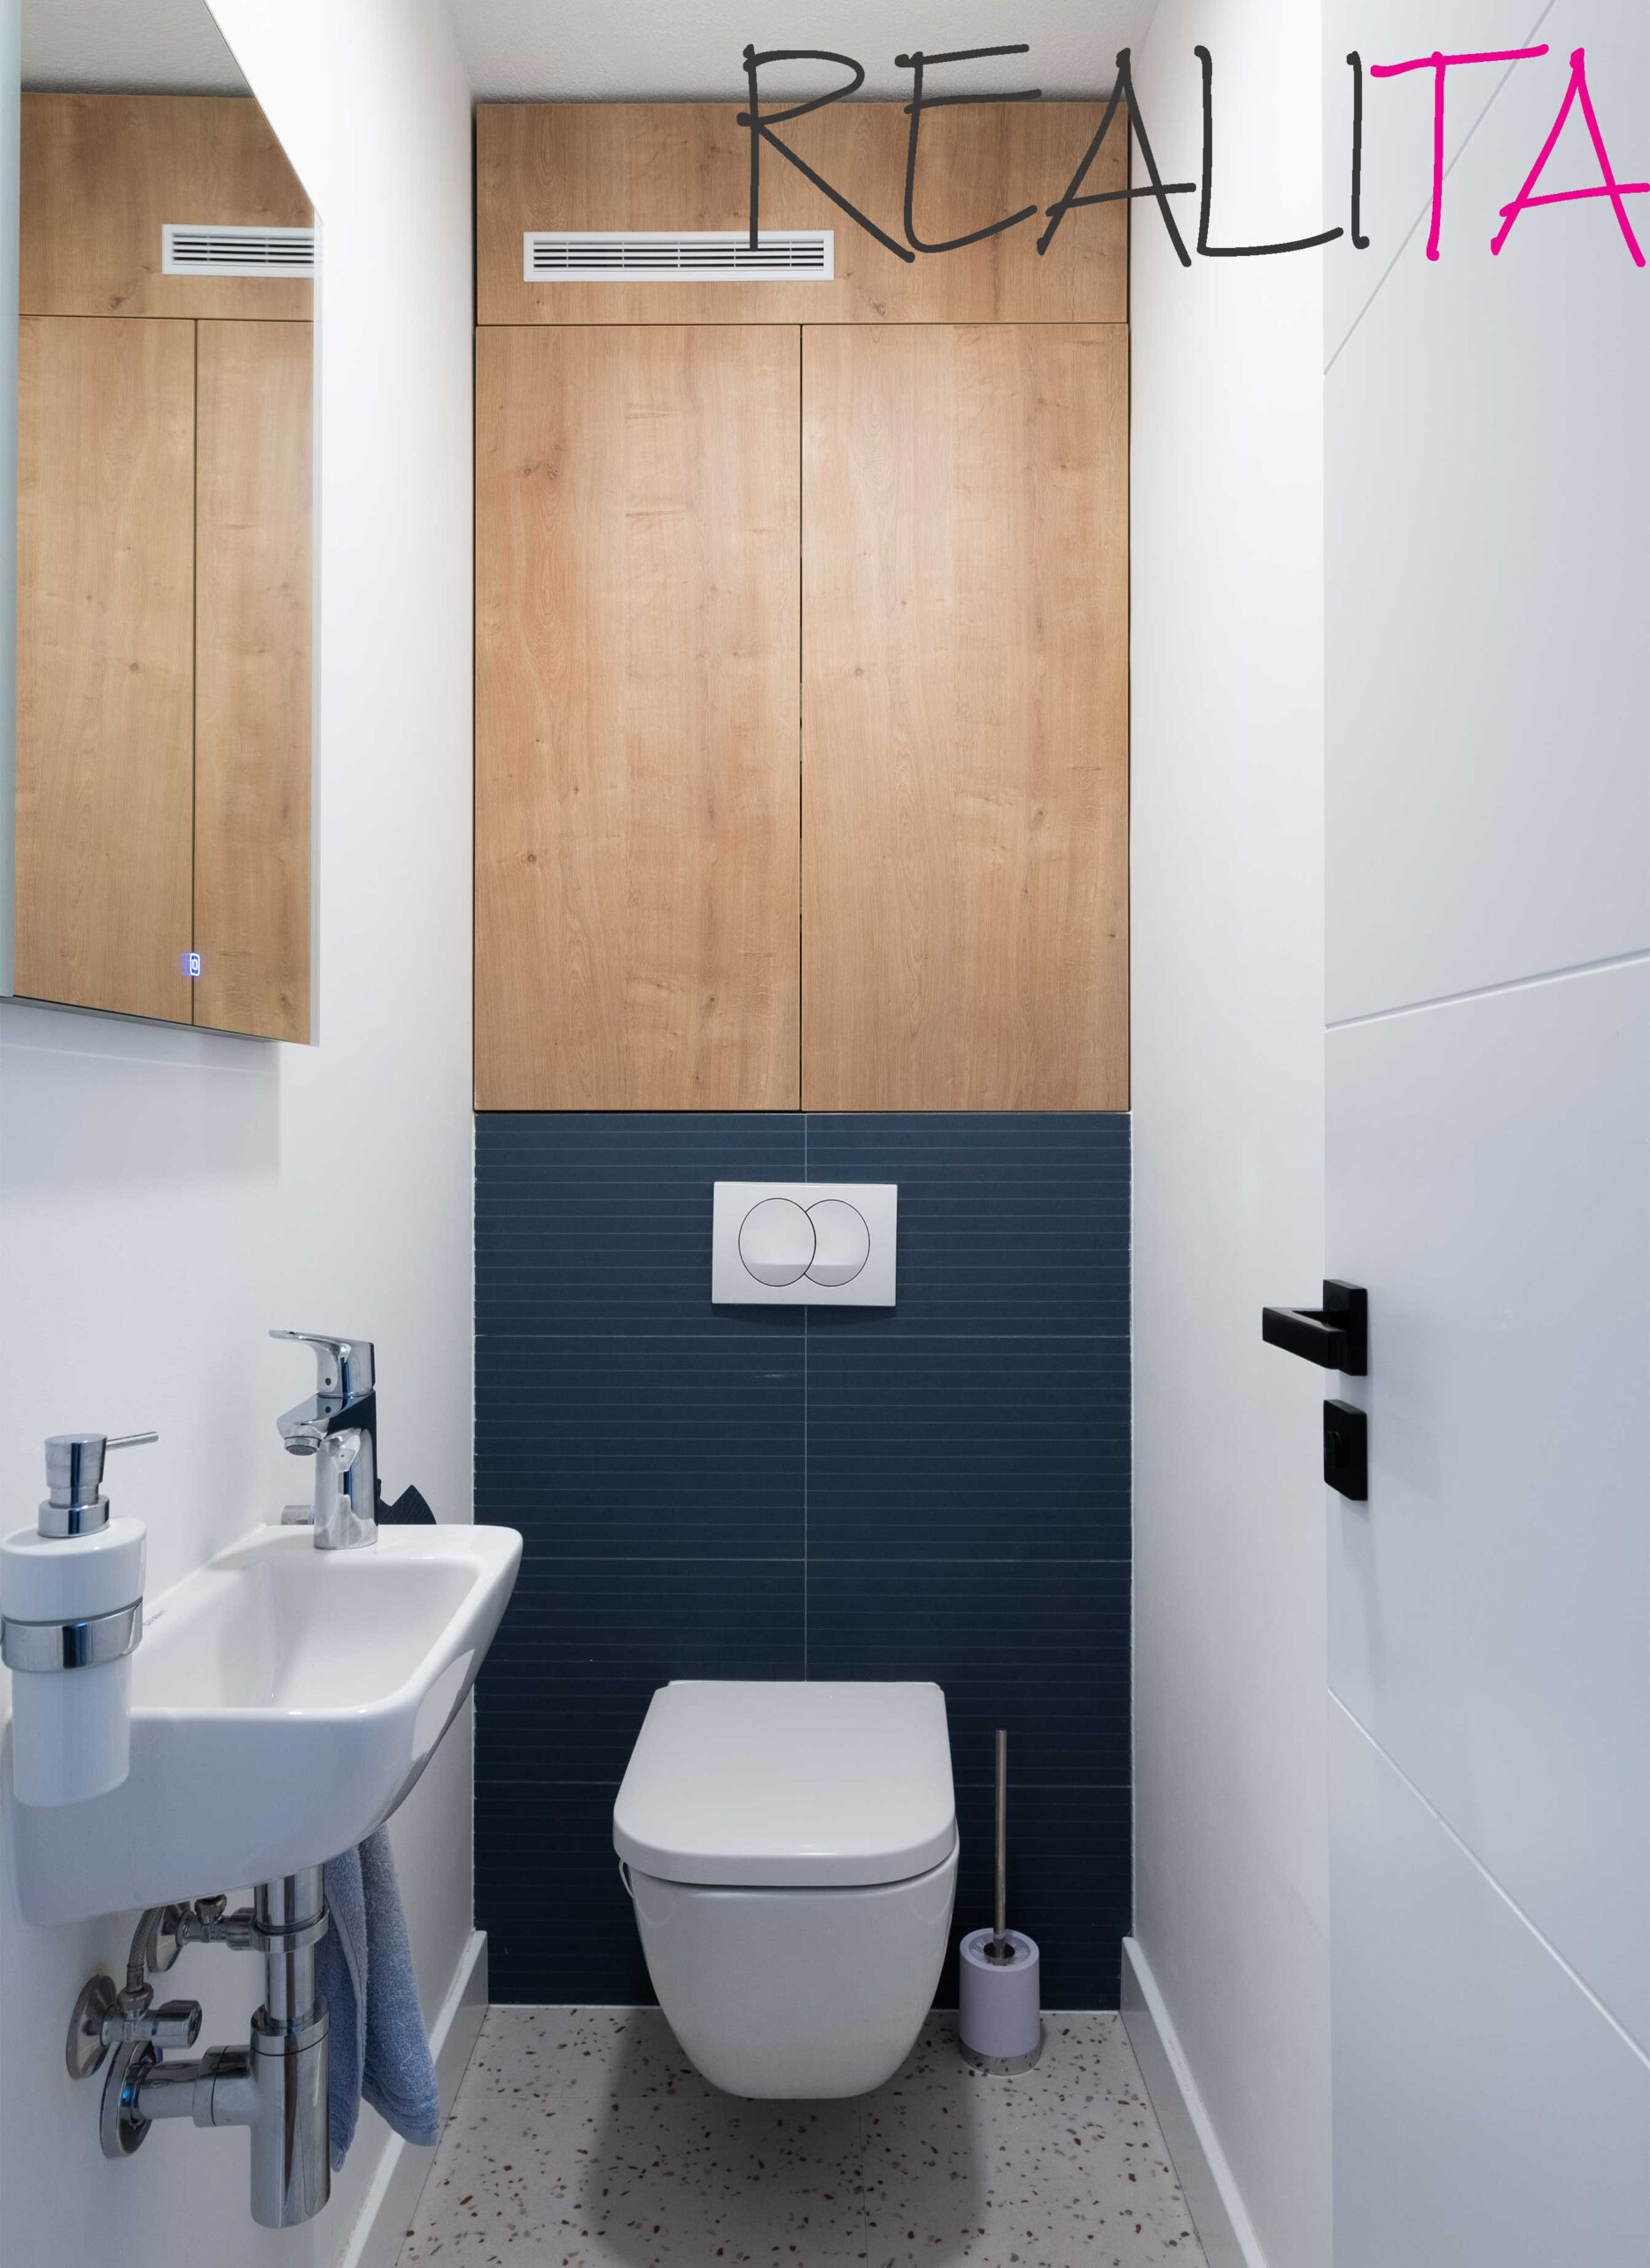 Záchod s umývadlom a zrkadlom, spestrený tmavomodrým obkladom a drevenou skrinkou na jednej stene